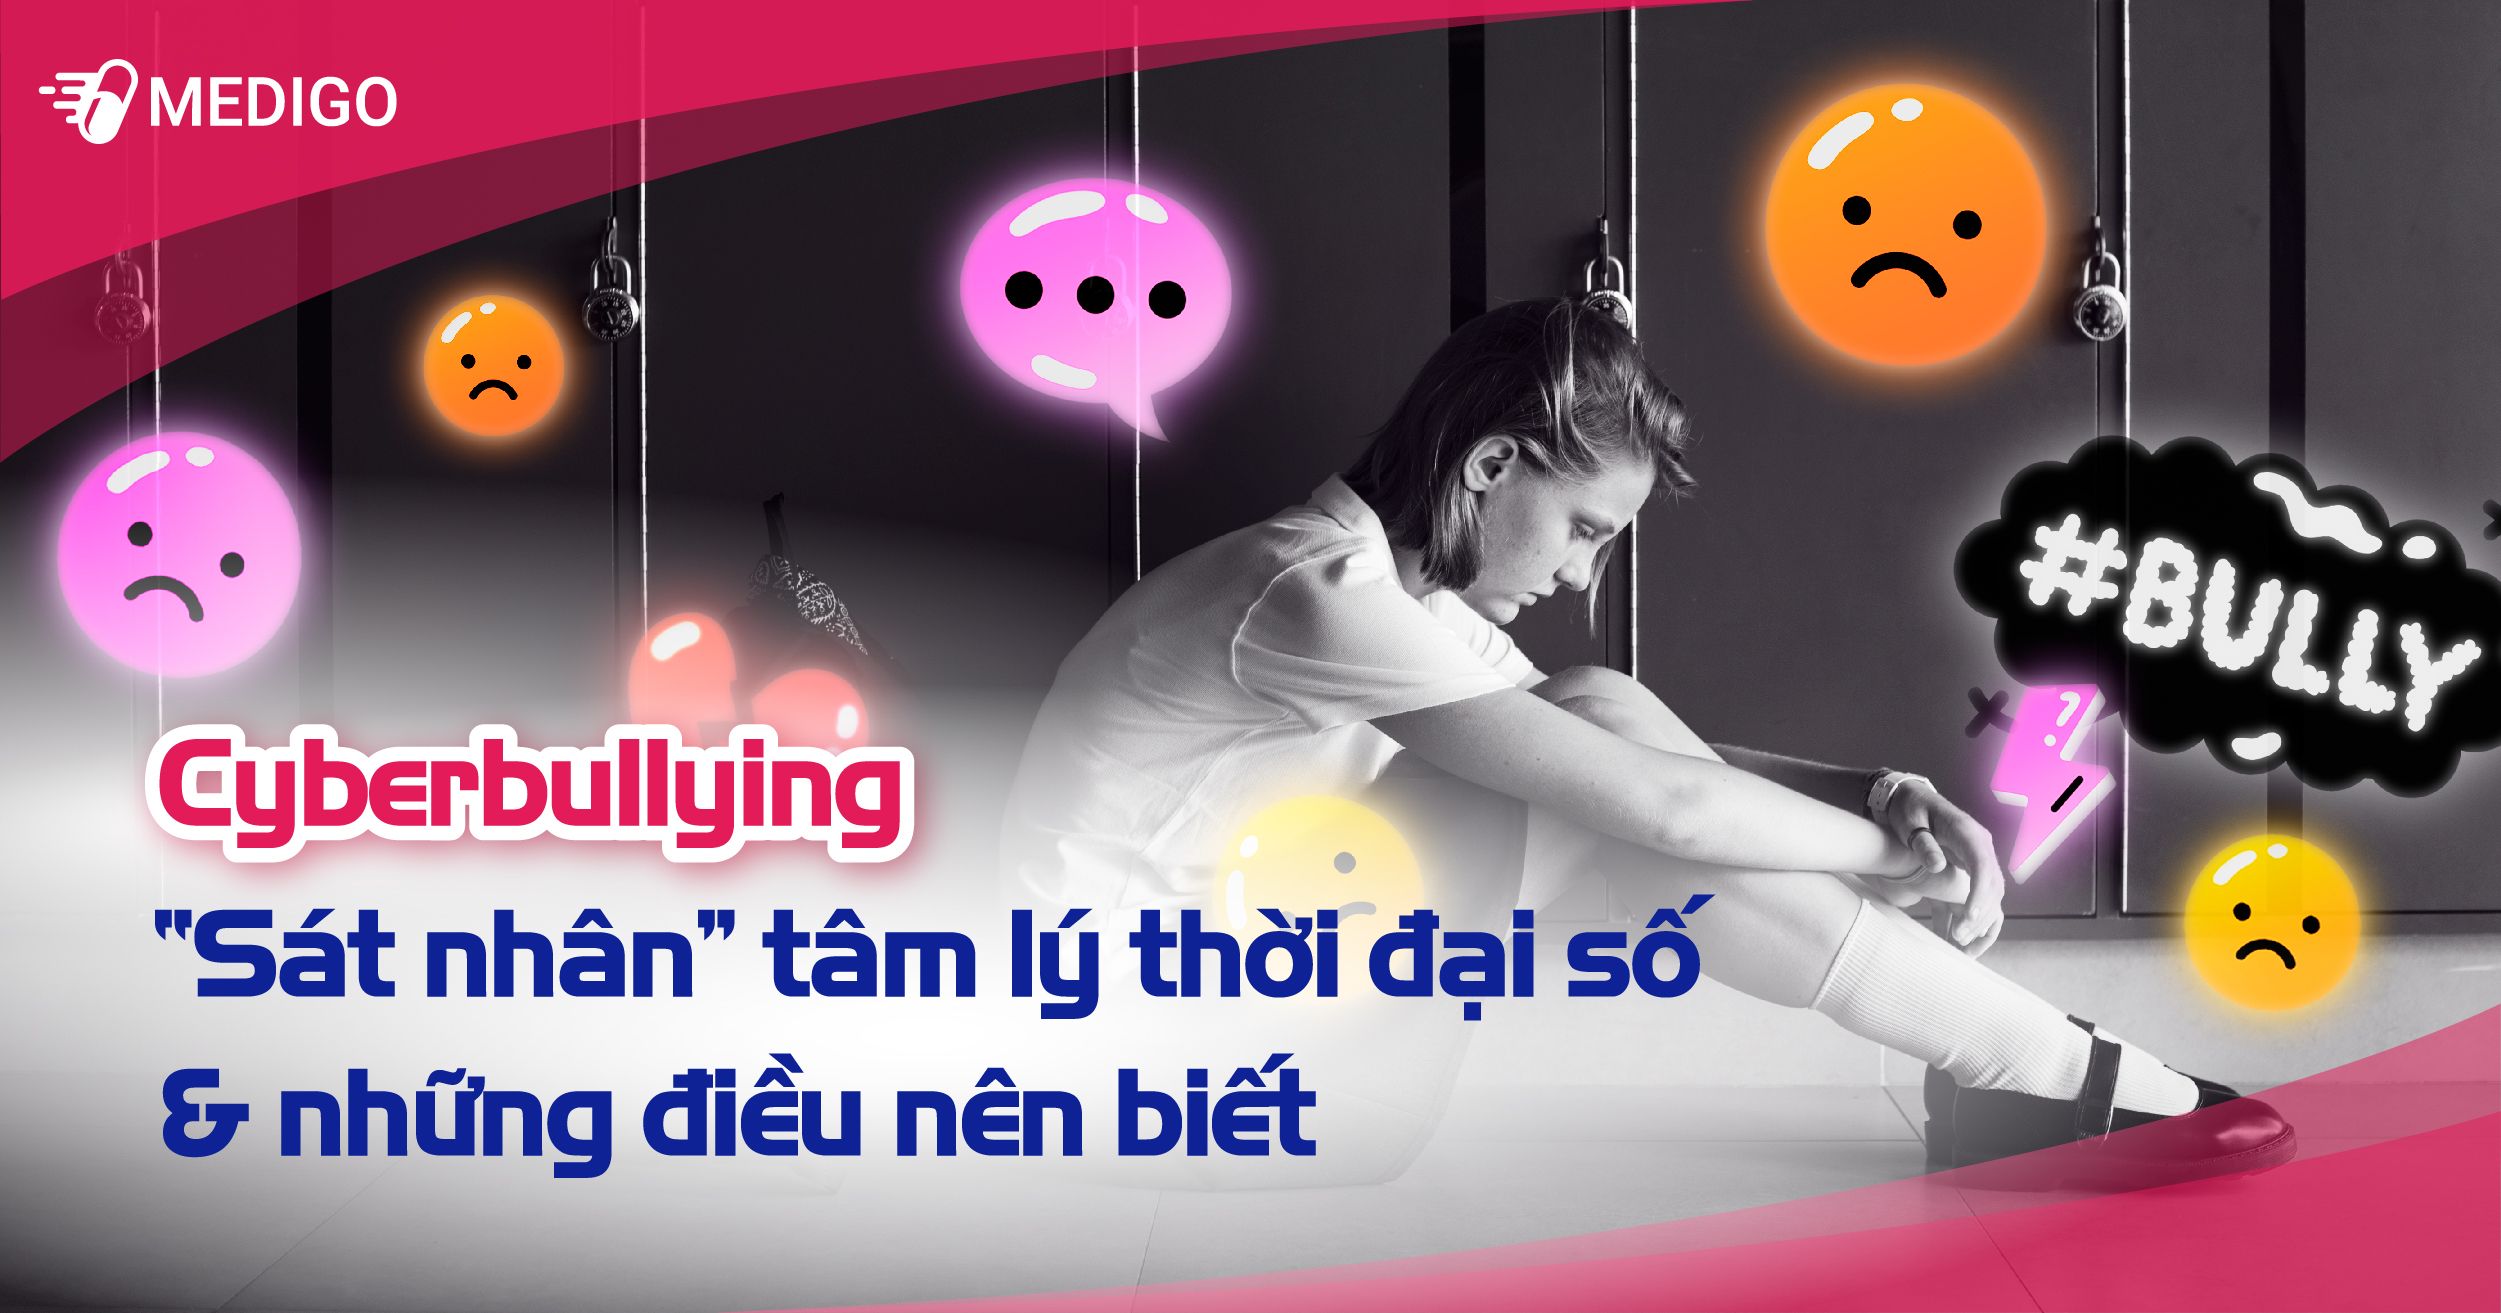 Bắt nạt trực tuyến (Cyberbullying) - Sát nhân tâm lý thời đại số